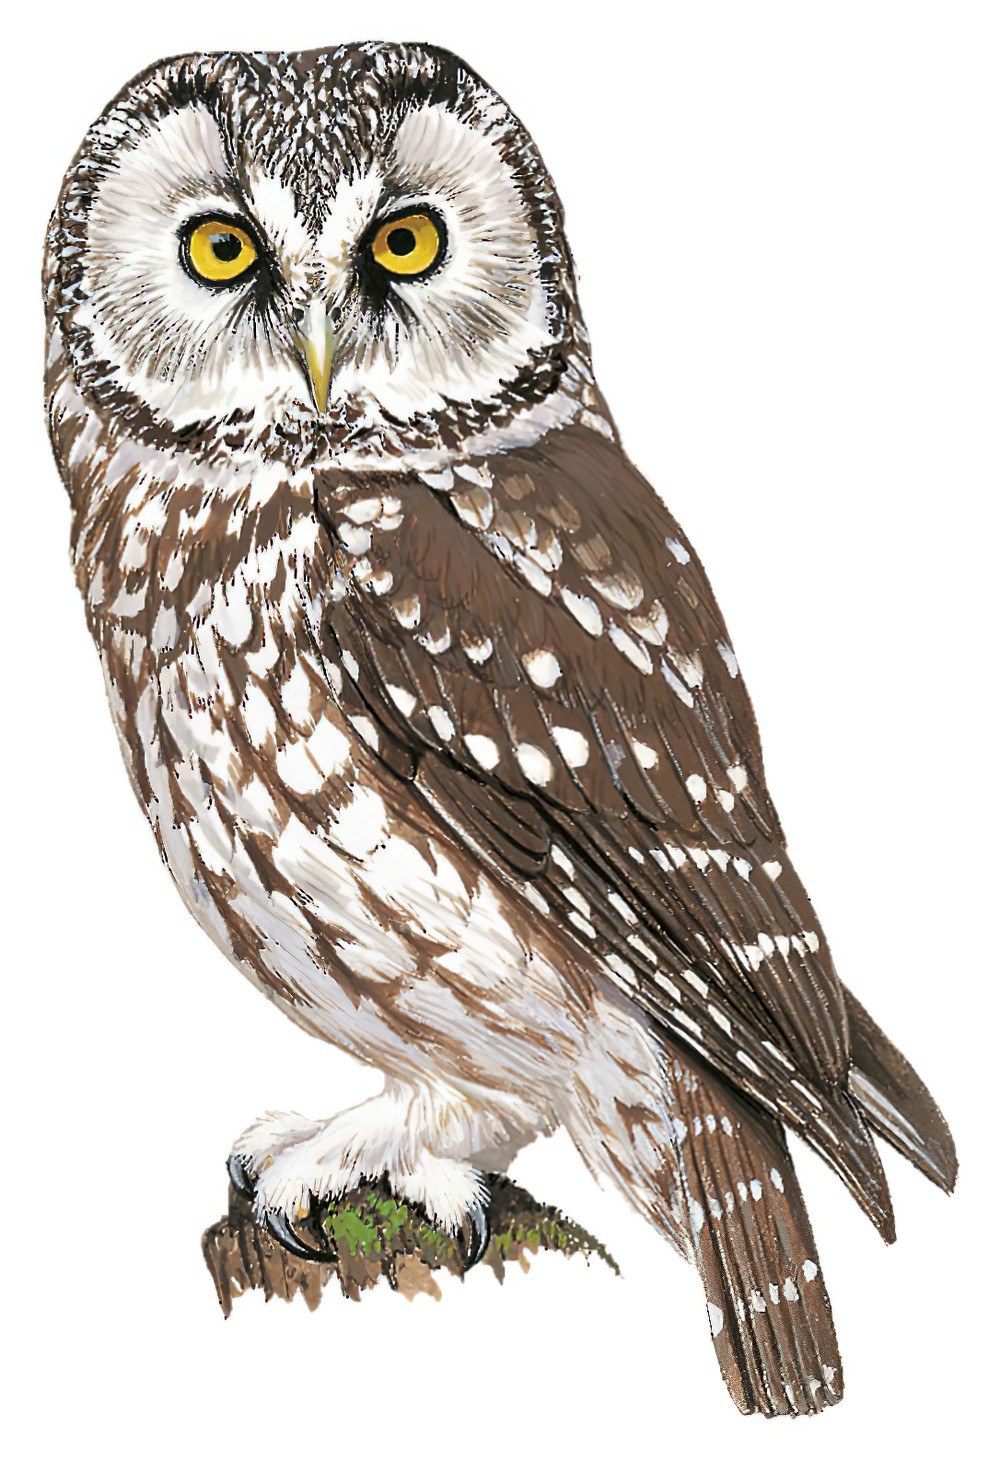 Boreal Owl / Aegolius funereus